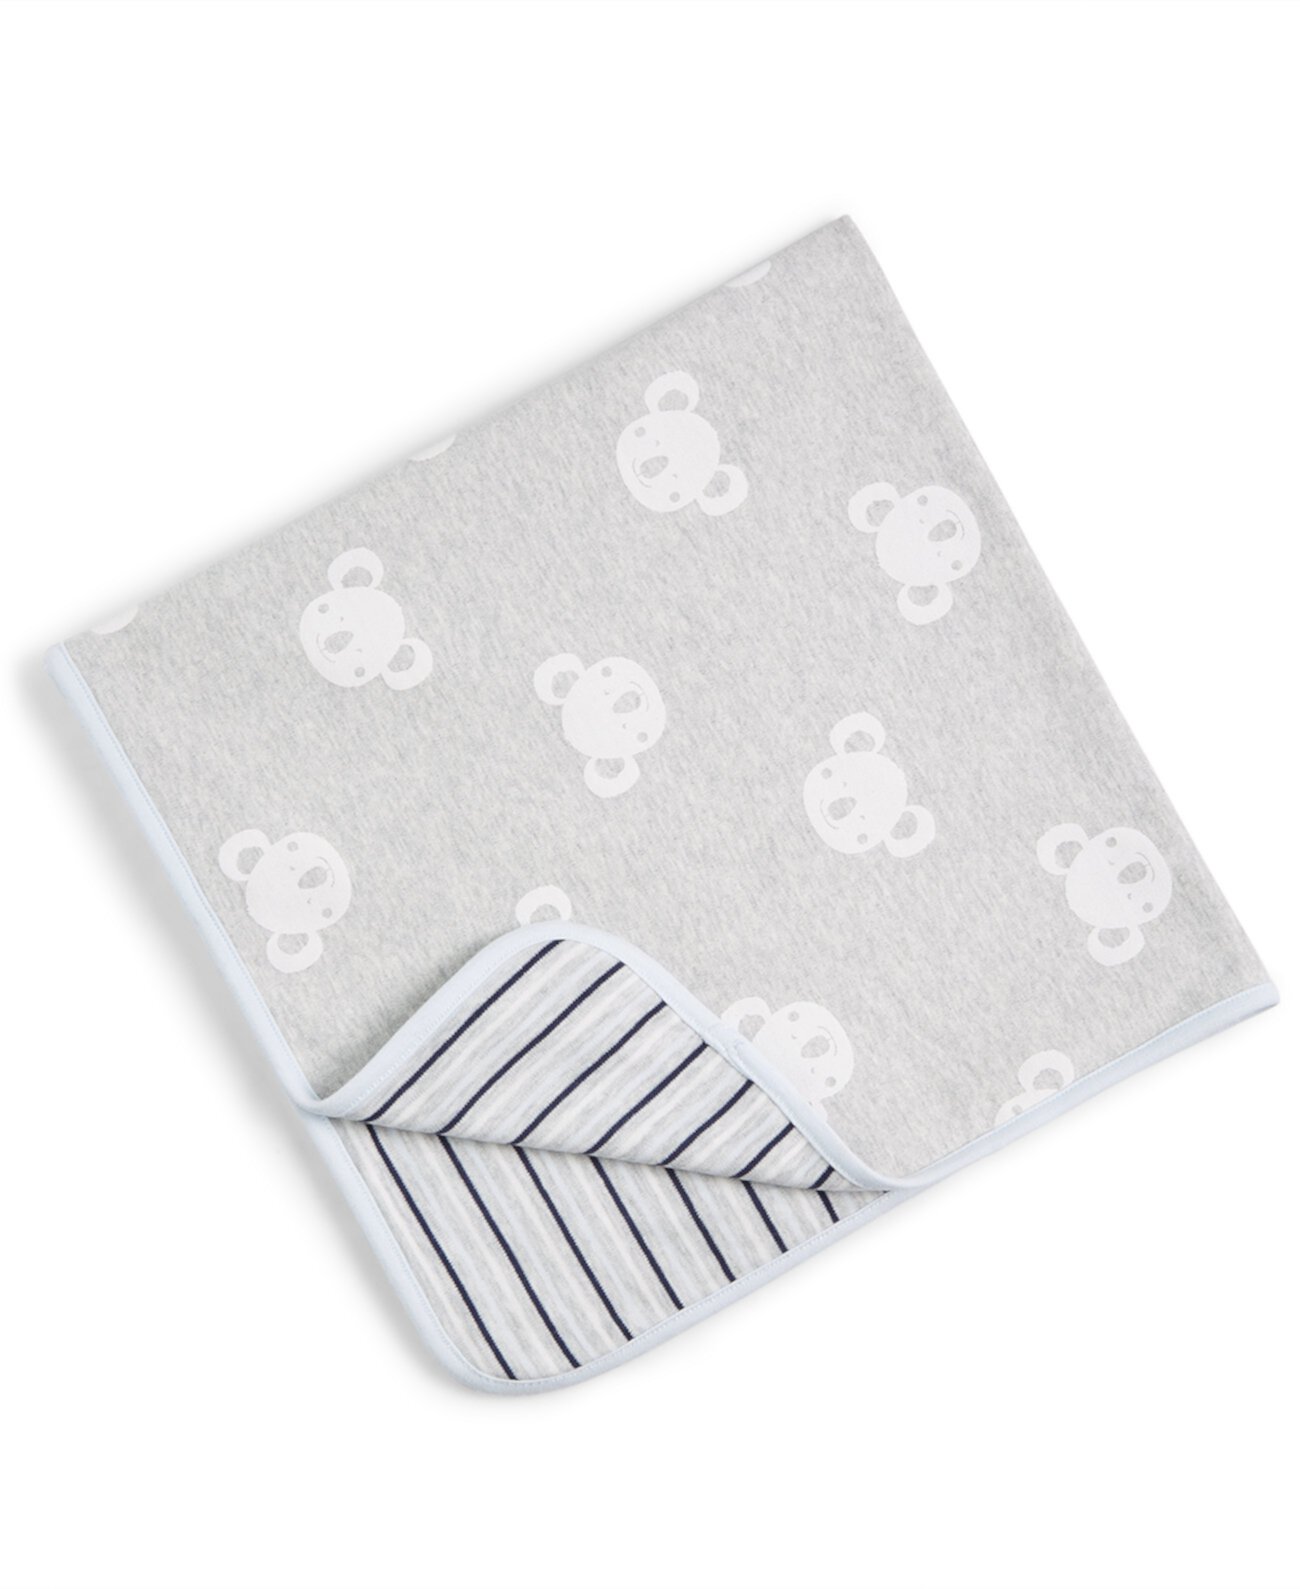 Двустороннее детское одеяло с принтом коала, созданное для Macy's First Impressions